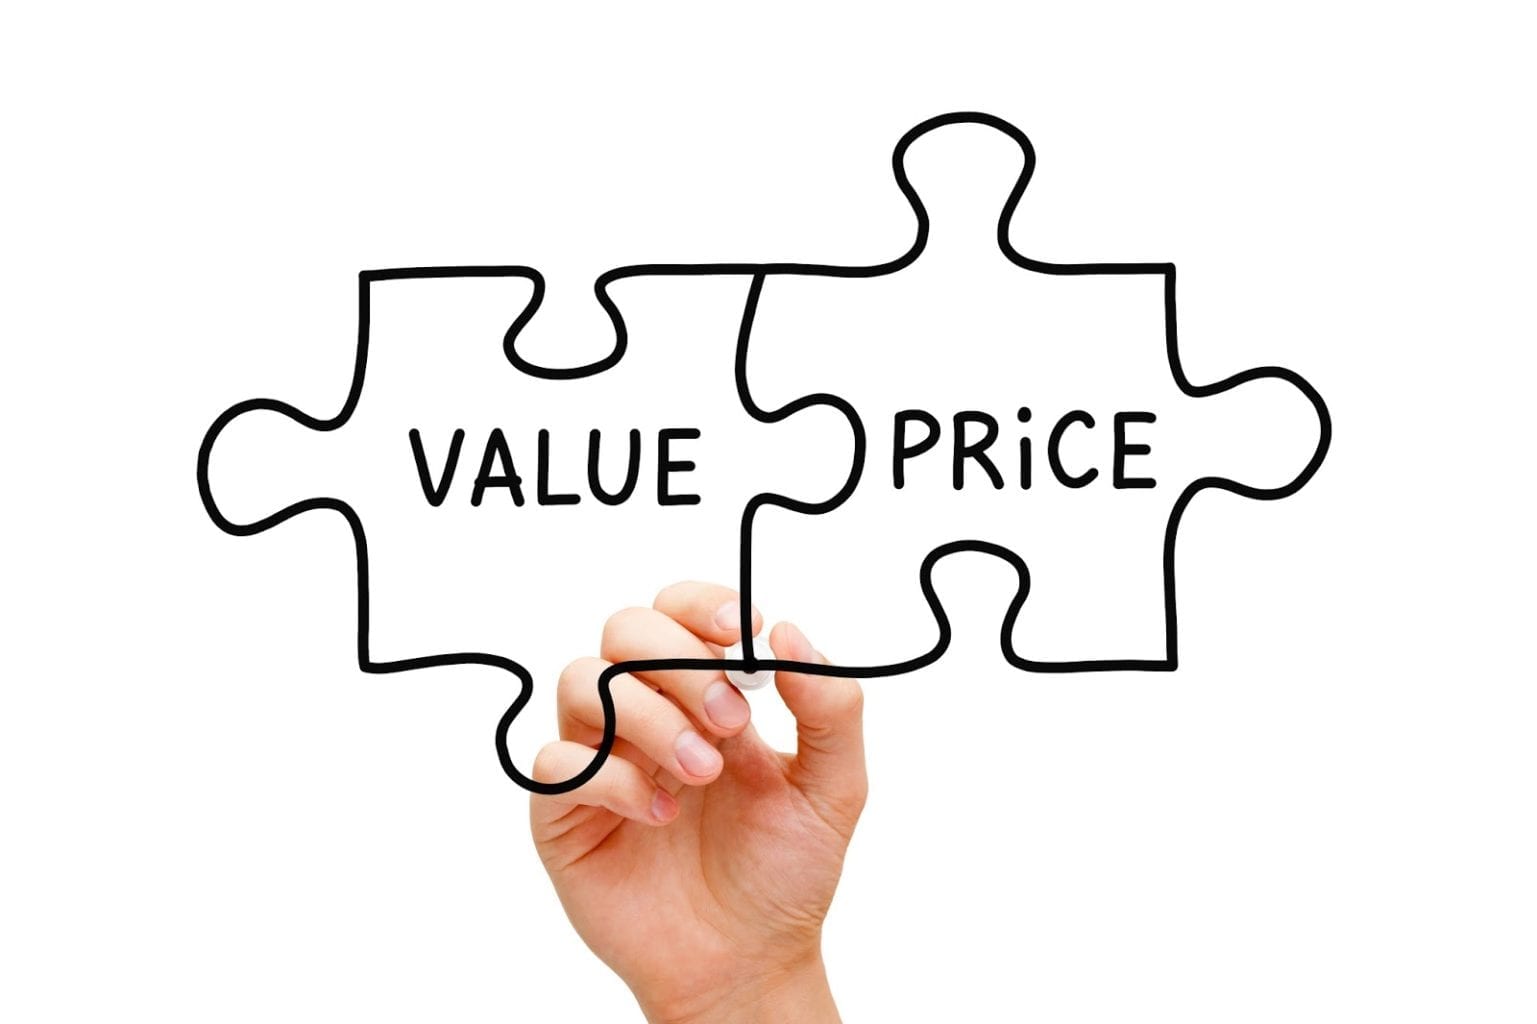 Diferença entre preço e valor: Essas definições dizem a mesma coisa?